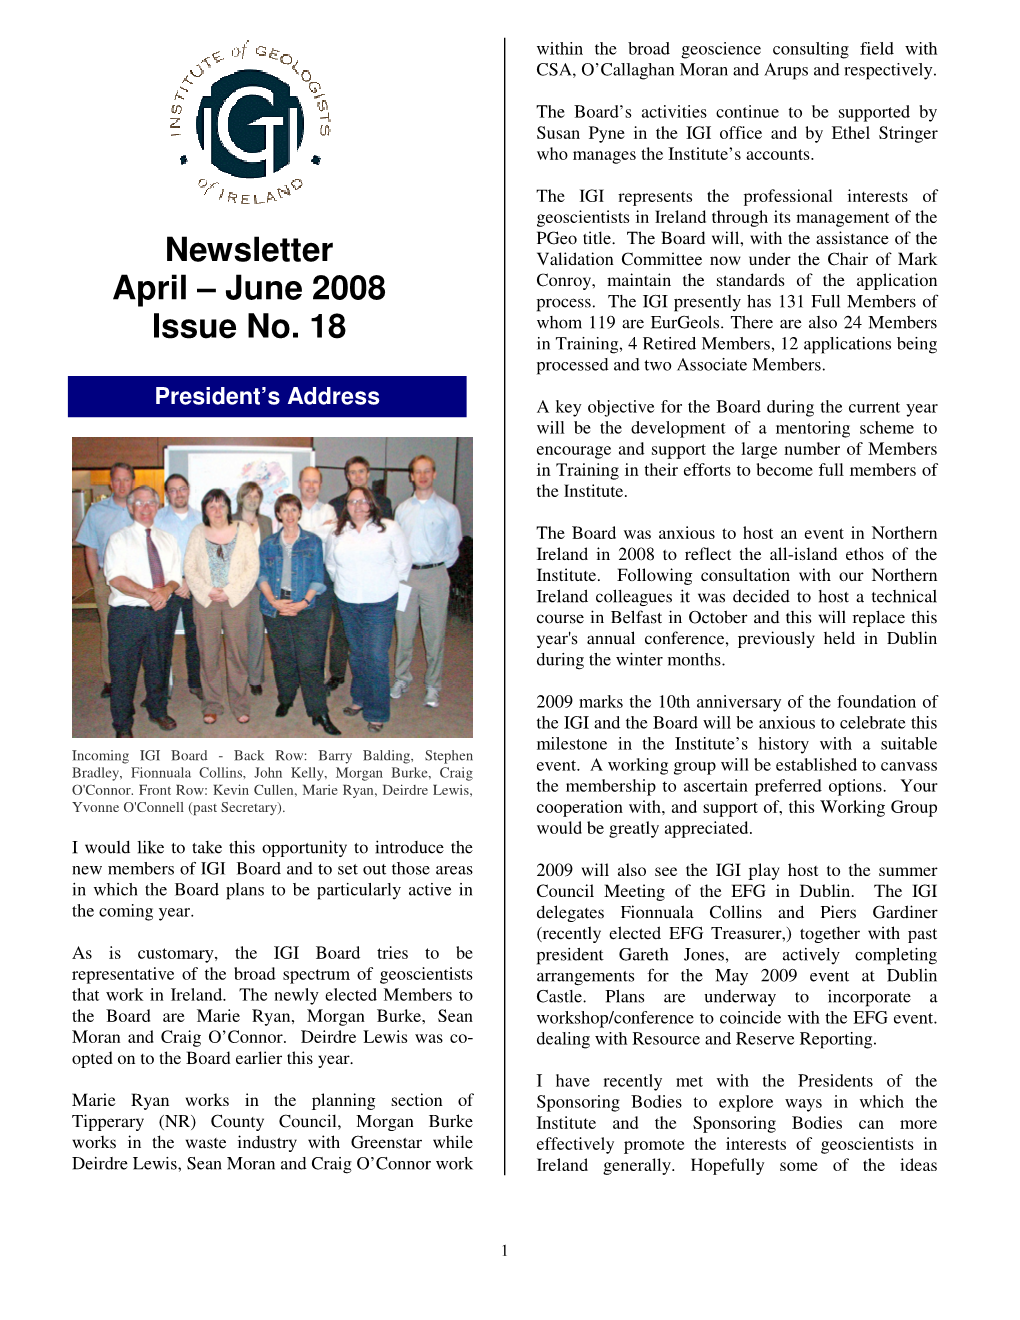 Newsletter April – June 2008 Issue